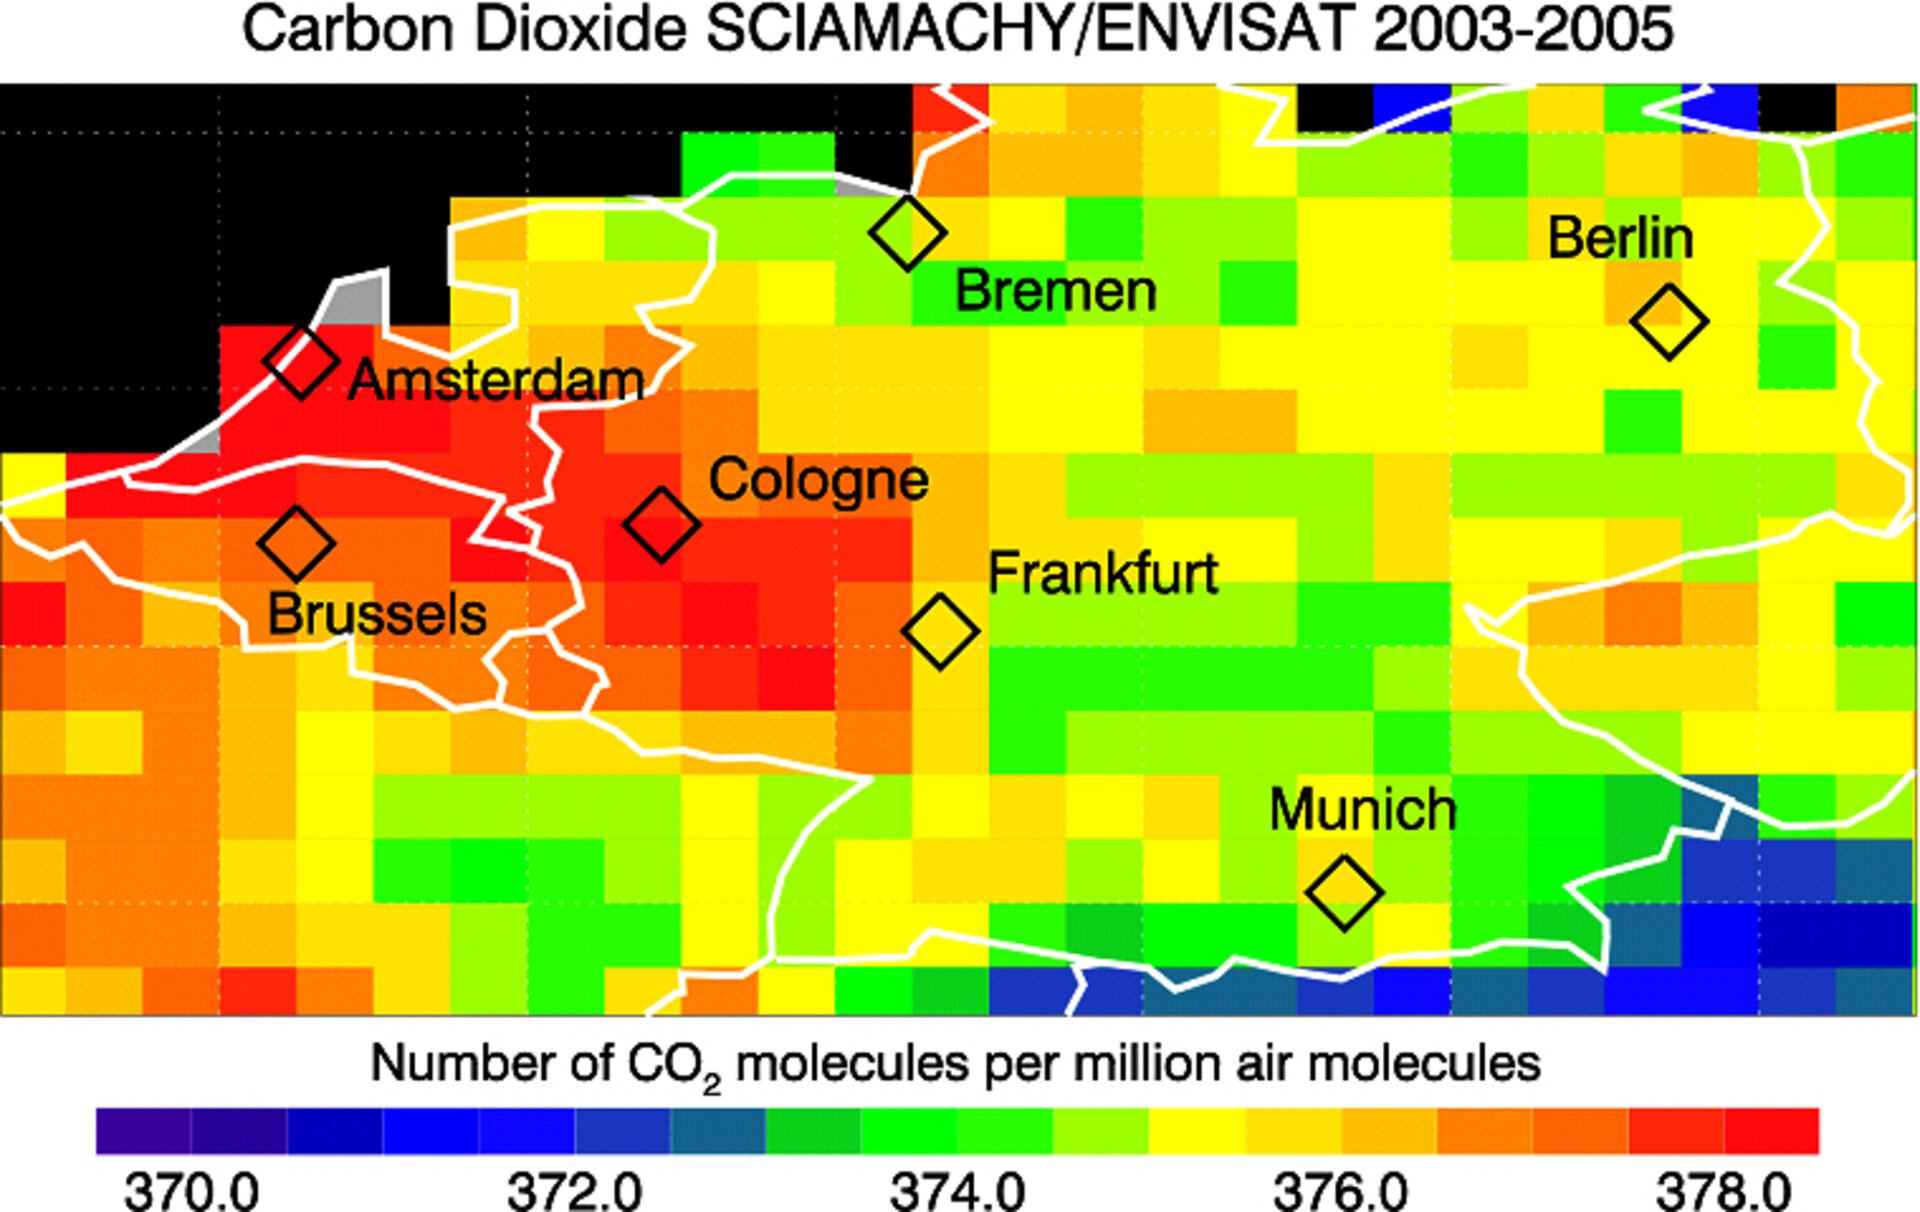 Voici, analysé sur la période 2003-2005, l'état du gaz carbonique sur le Bénélux et l’Allemagne